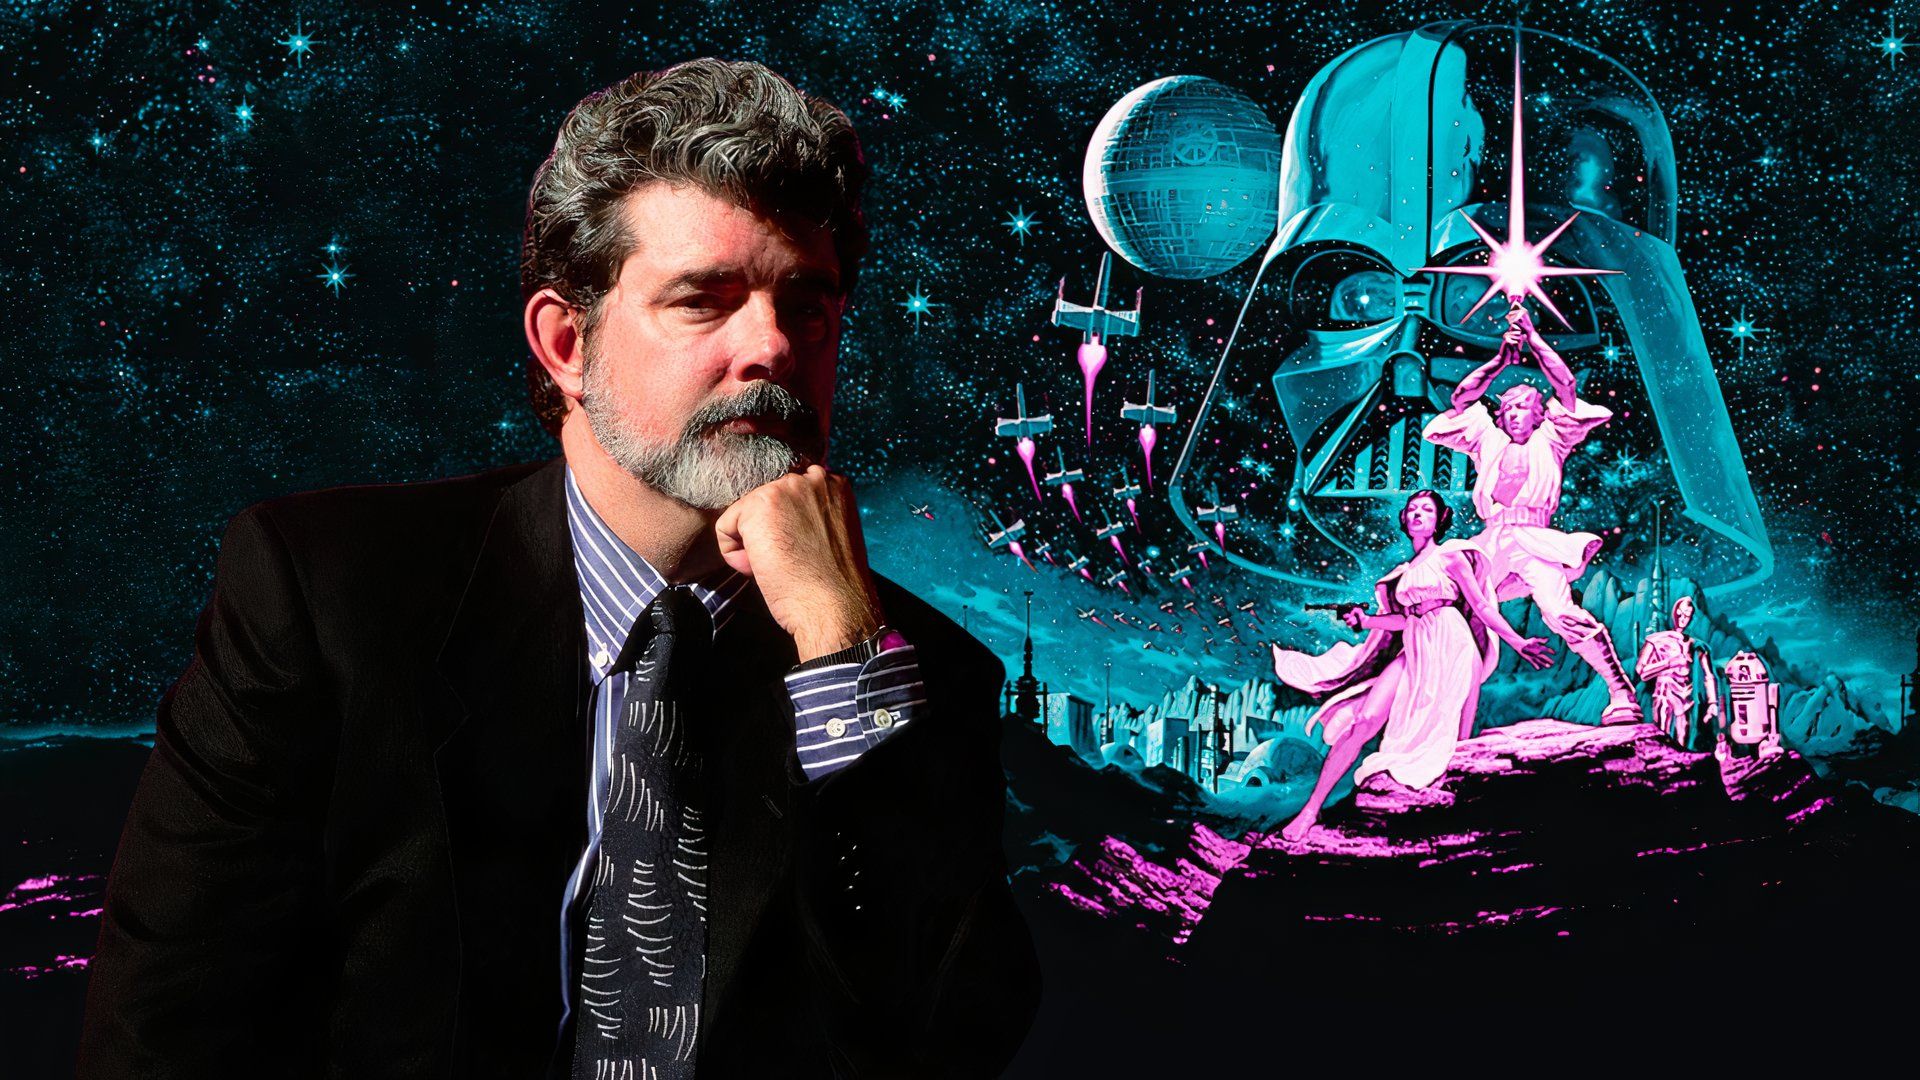 La version originale de Star Wars de George Lucas existe-t-elle toujours ?